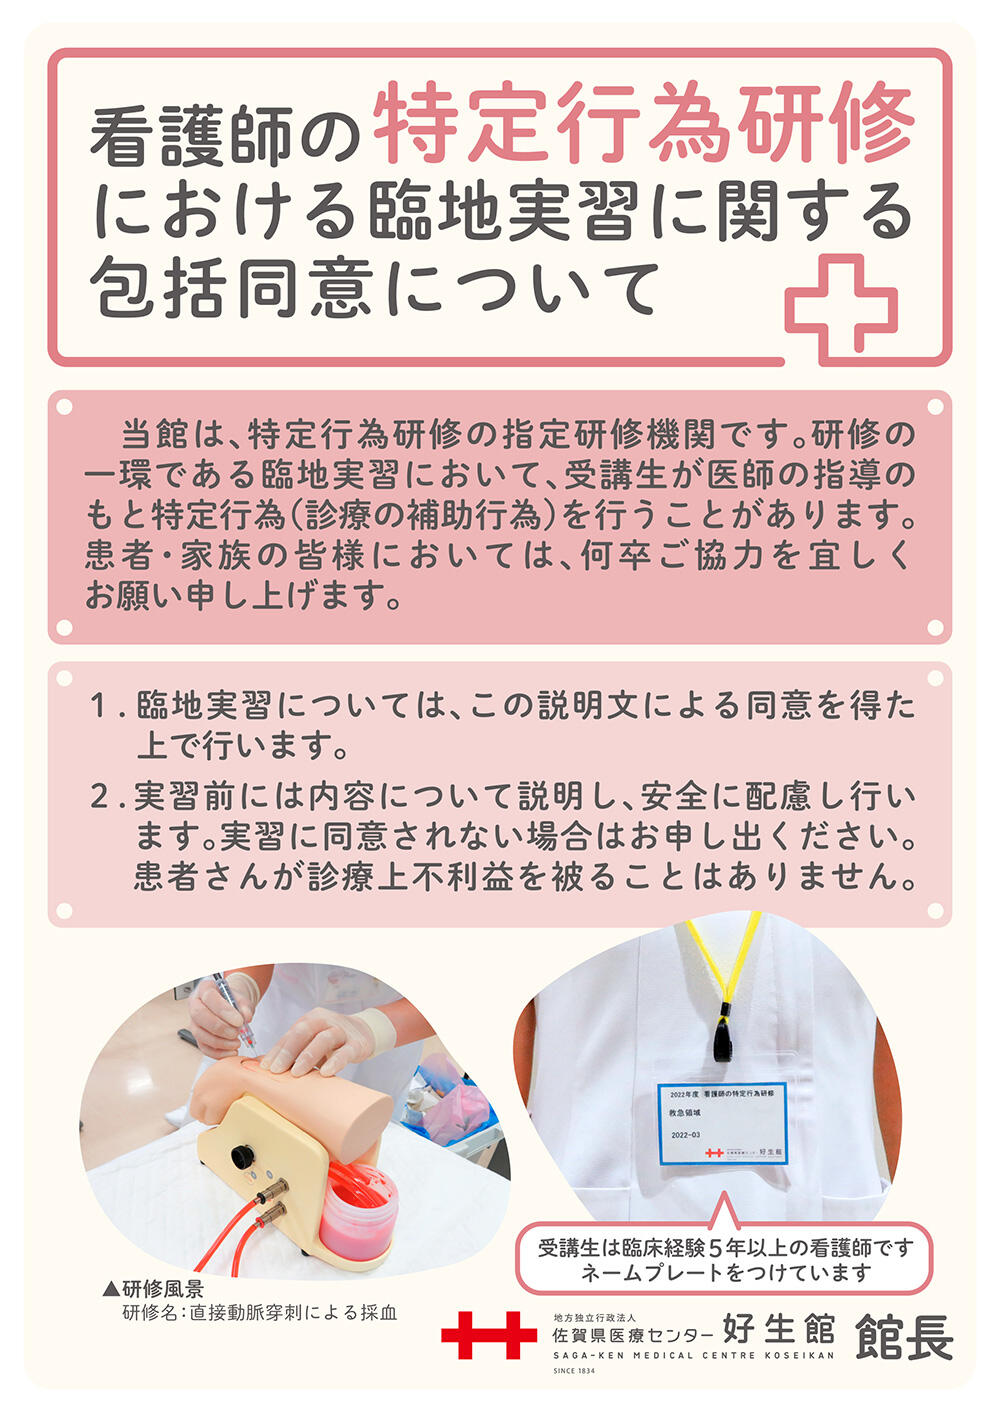 看護師の特定行為研修における包括的同意についてのポスター